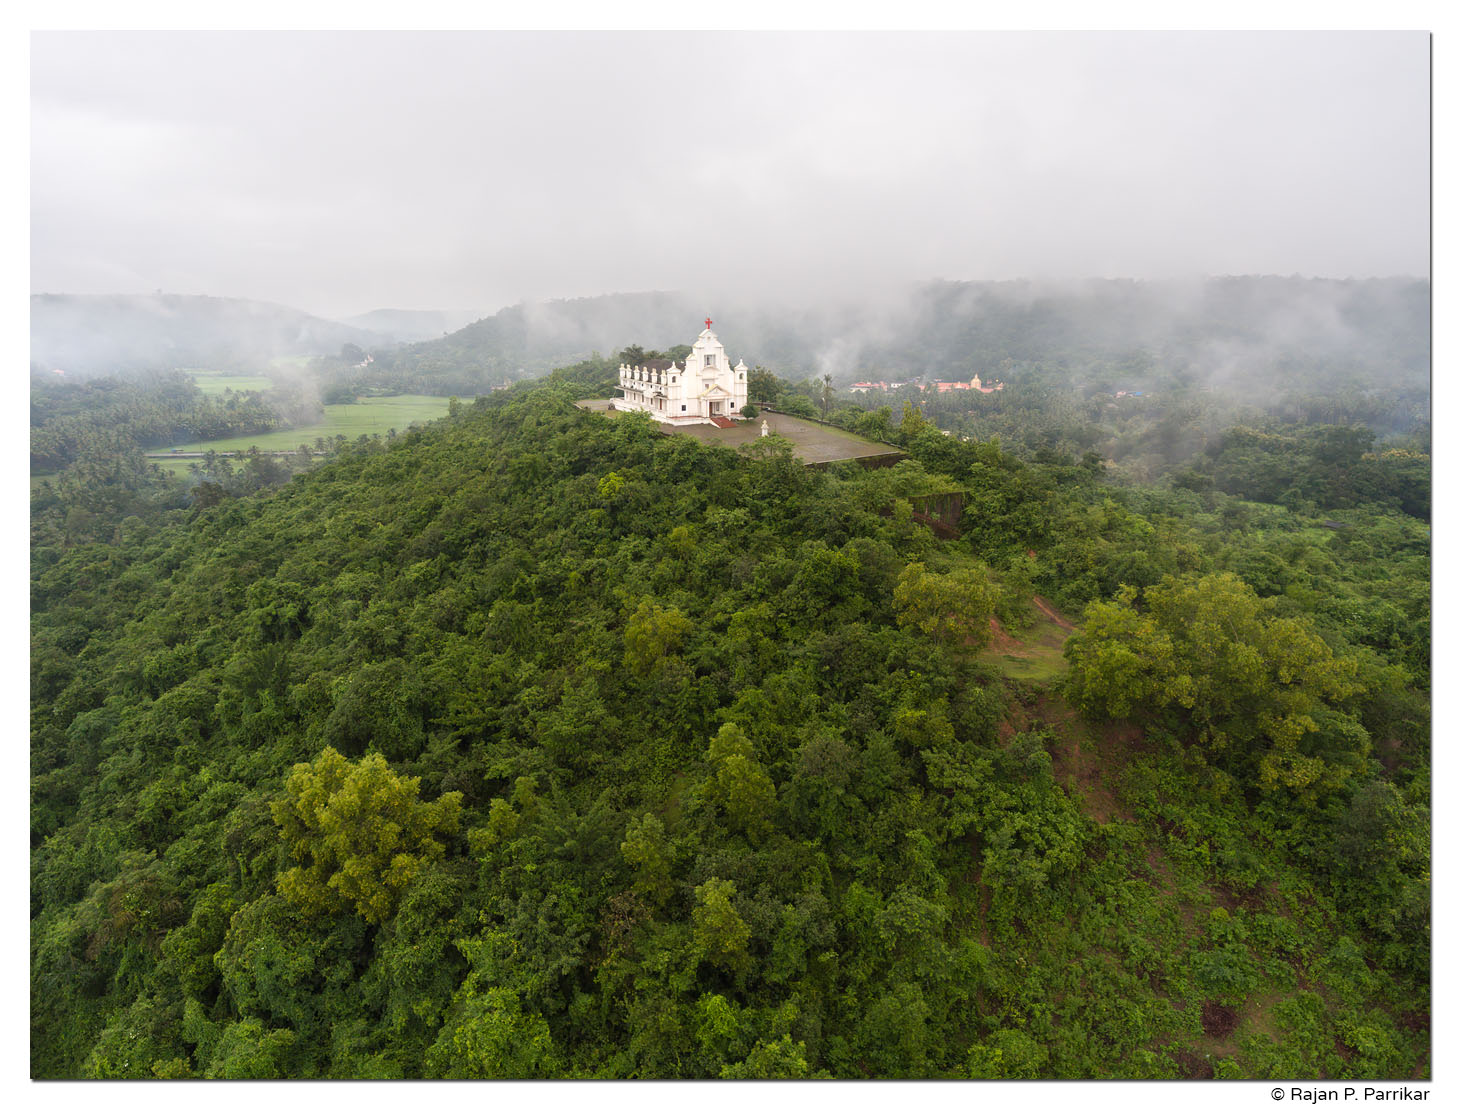 St. Roque Chapel in Rainguinim-Bandora, Goa